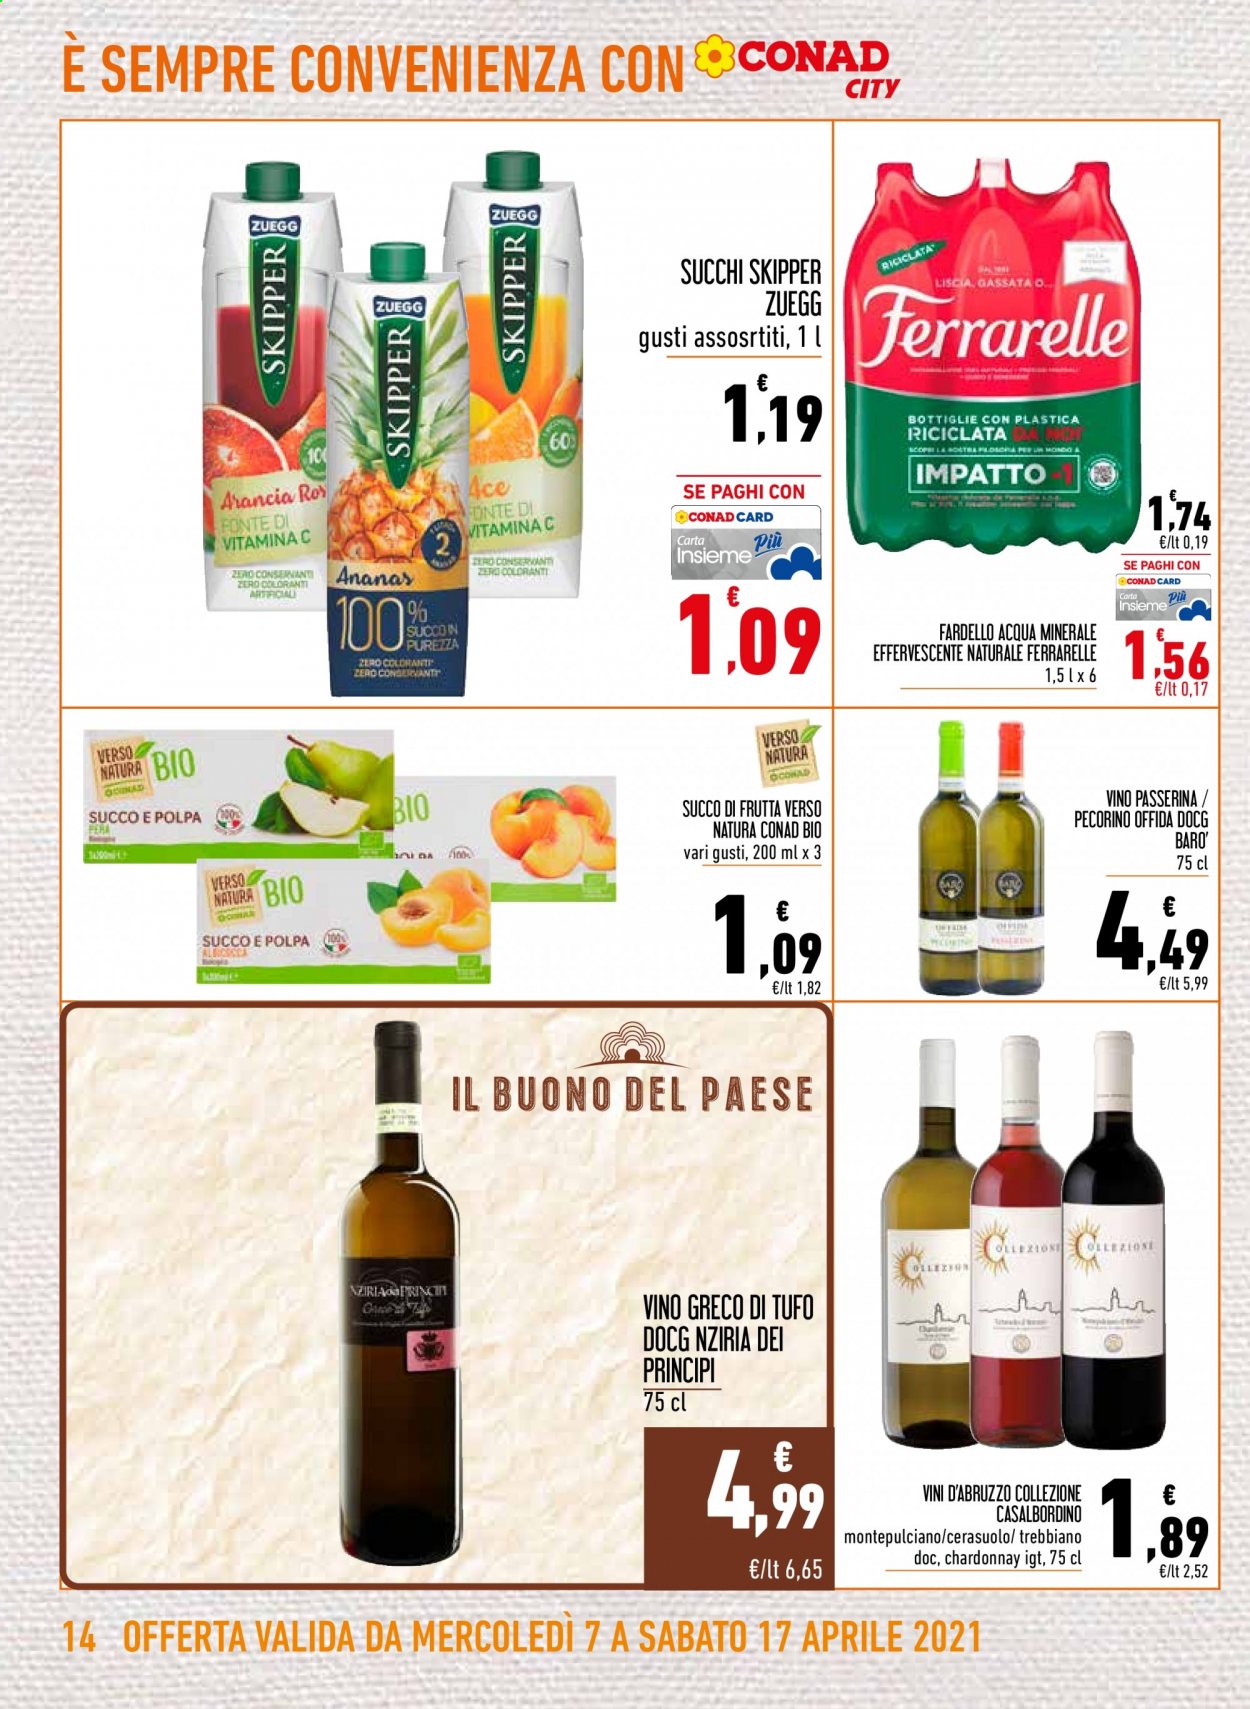 thumbnail - Volantino Conad - 7/4/2021 - 17/4/2021 - Prodotti in offerta - Zuegg, succo, Skipper, acqua minerale, Ferrarelle, vino bianco, Chardonnay, vino, Trebbiano, Cerasuolo. Pagina 14.